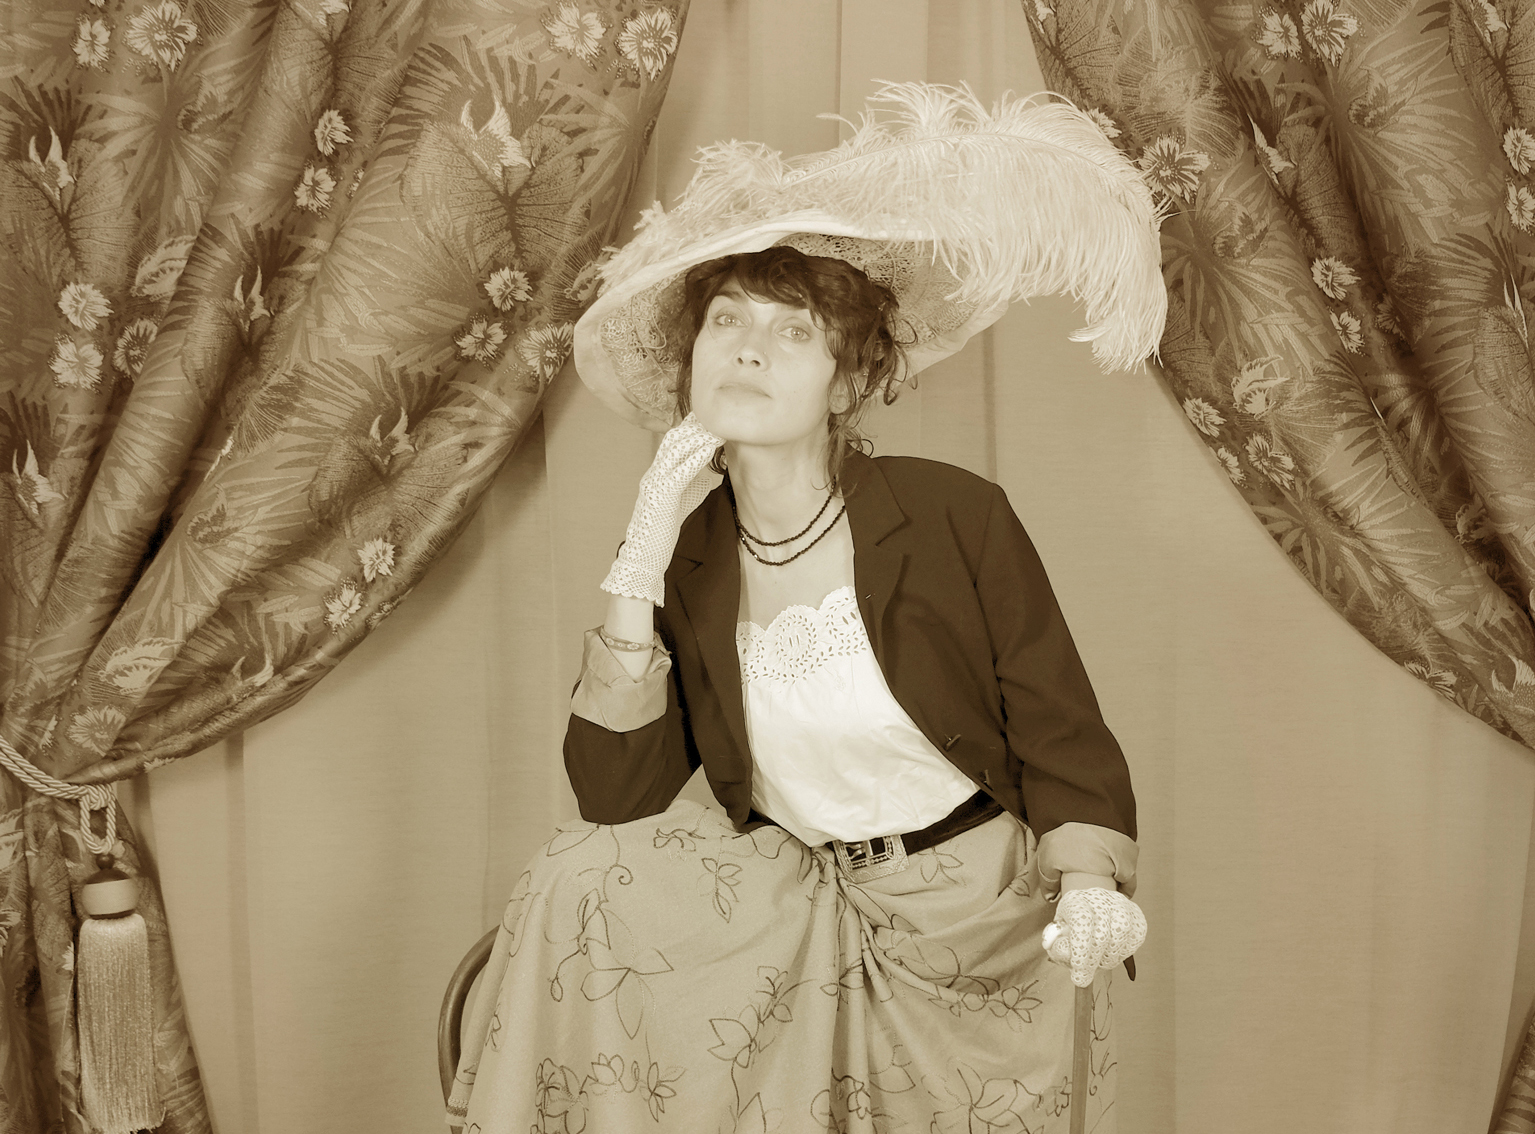 Jeu-de-rôle-hommage-aux-femmes-caractères-1900